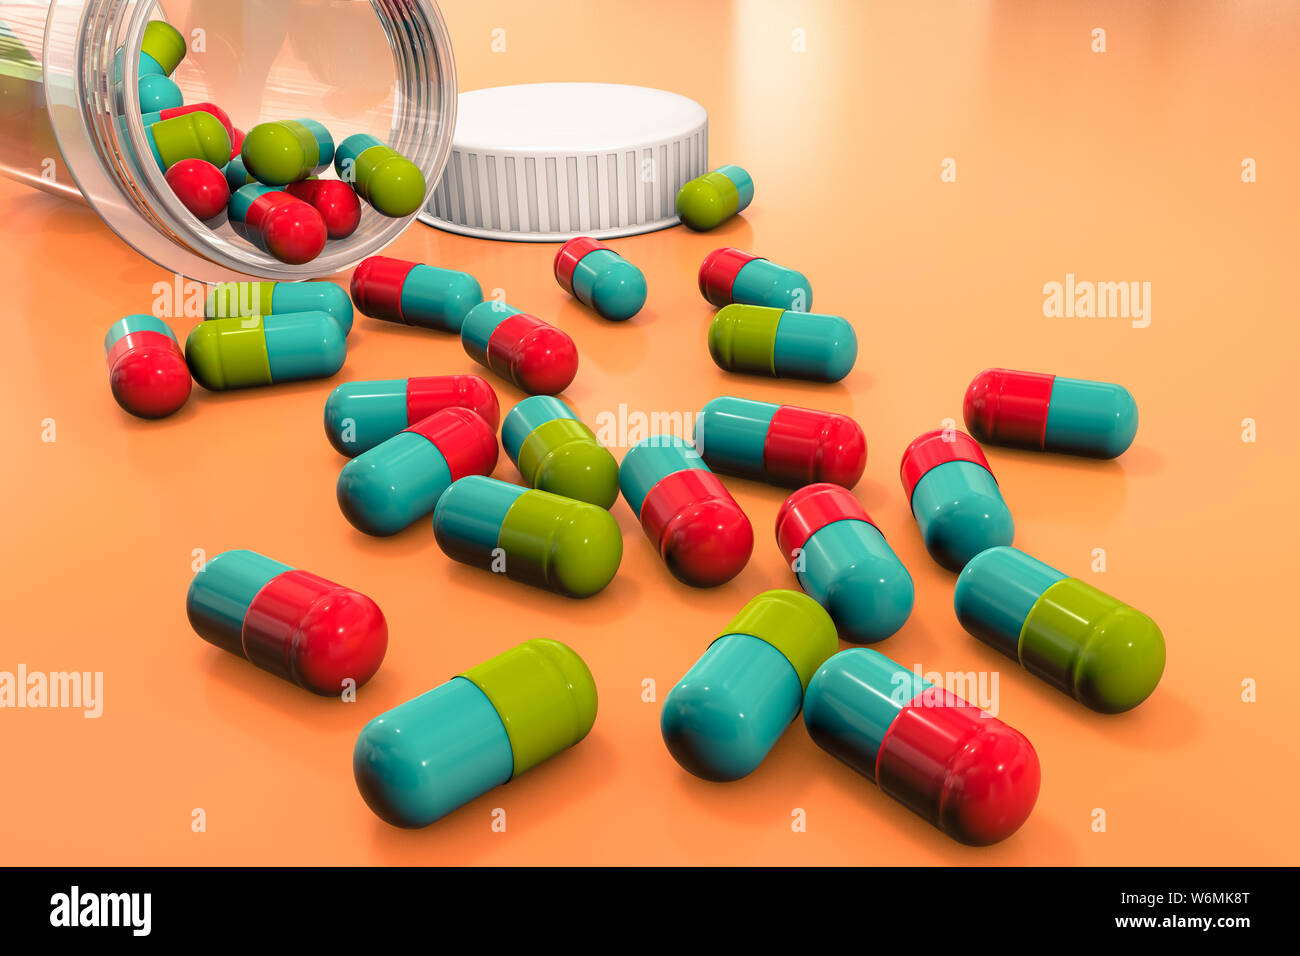 3D-Illustration: Helle farbige medizinische Pillen sind auf einem orange-braunen Tisch von einem transparenten Medizin Flasche zerstreut. Pharmazeutische Unternehmen Stockfoto